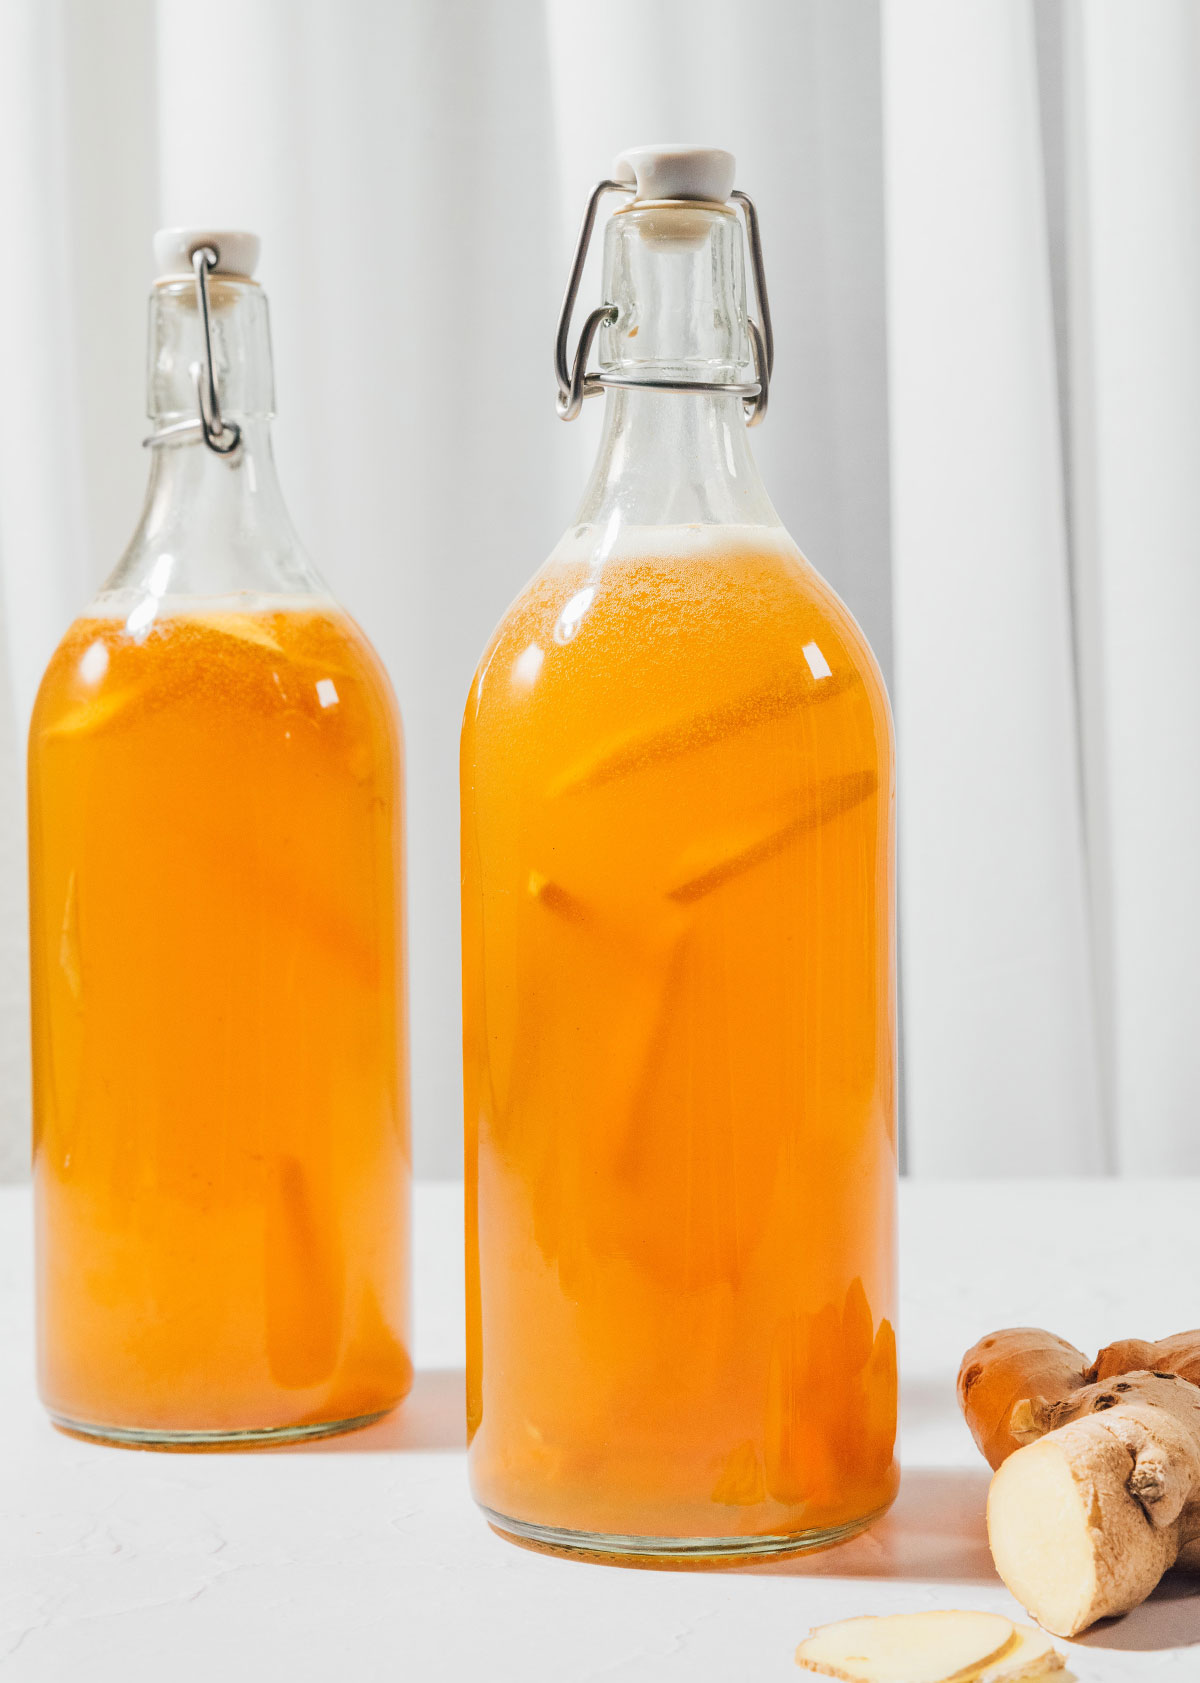 Fizzy ginger kombucha in bottles.